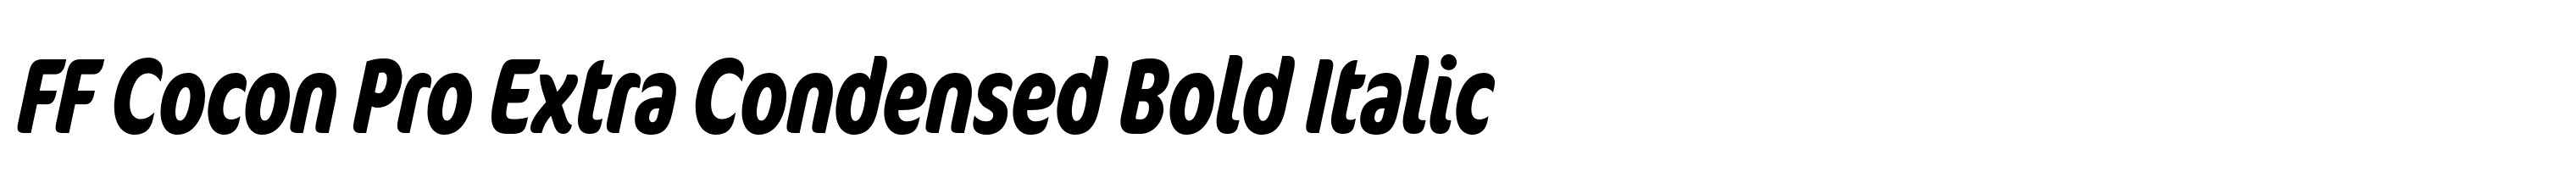 FF Cocon Pro Extra Condensed Bold Italic